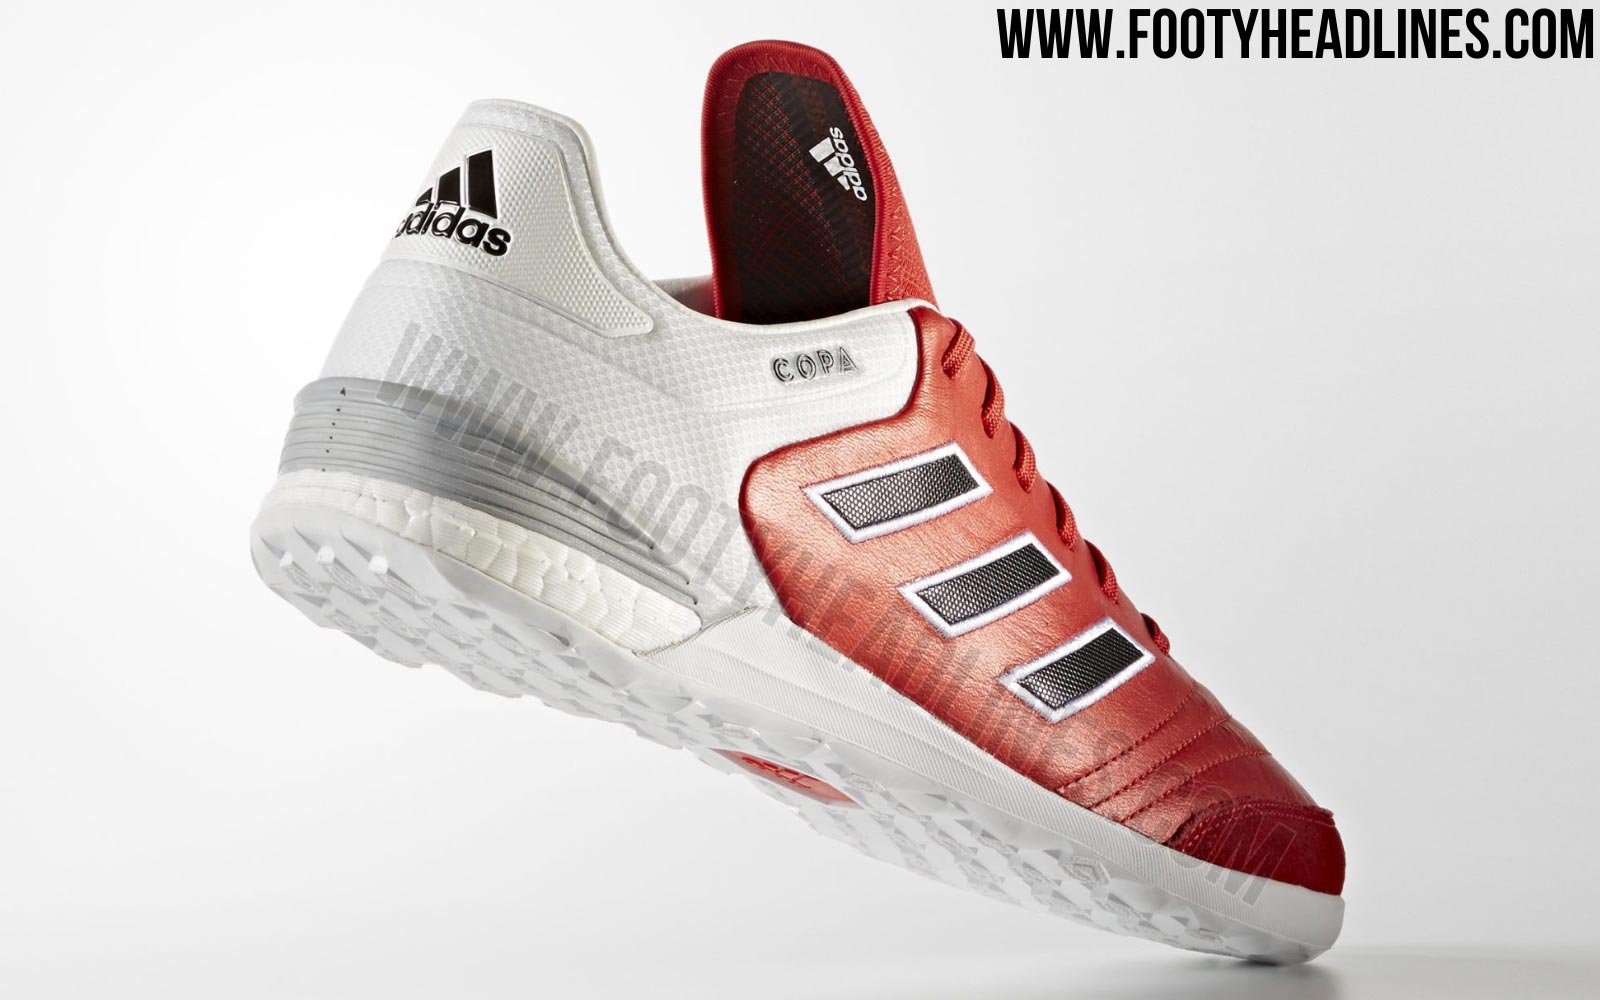 alias Validación molino Adidas Copa Tango 17 Indoor and Turf Boots Released - Footy Headlines